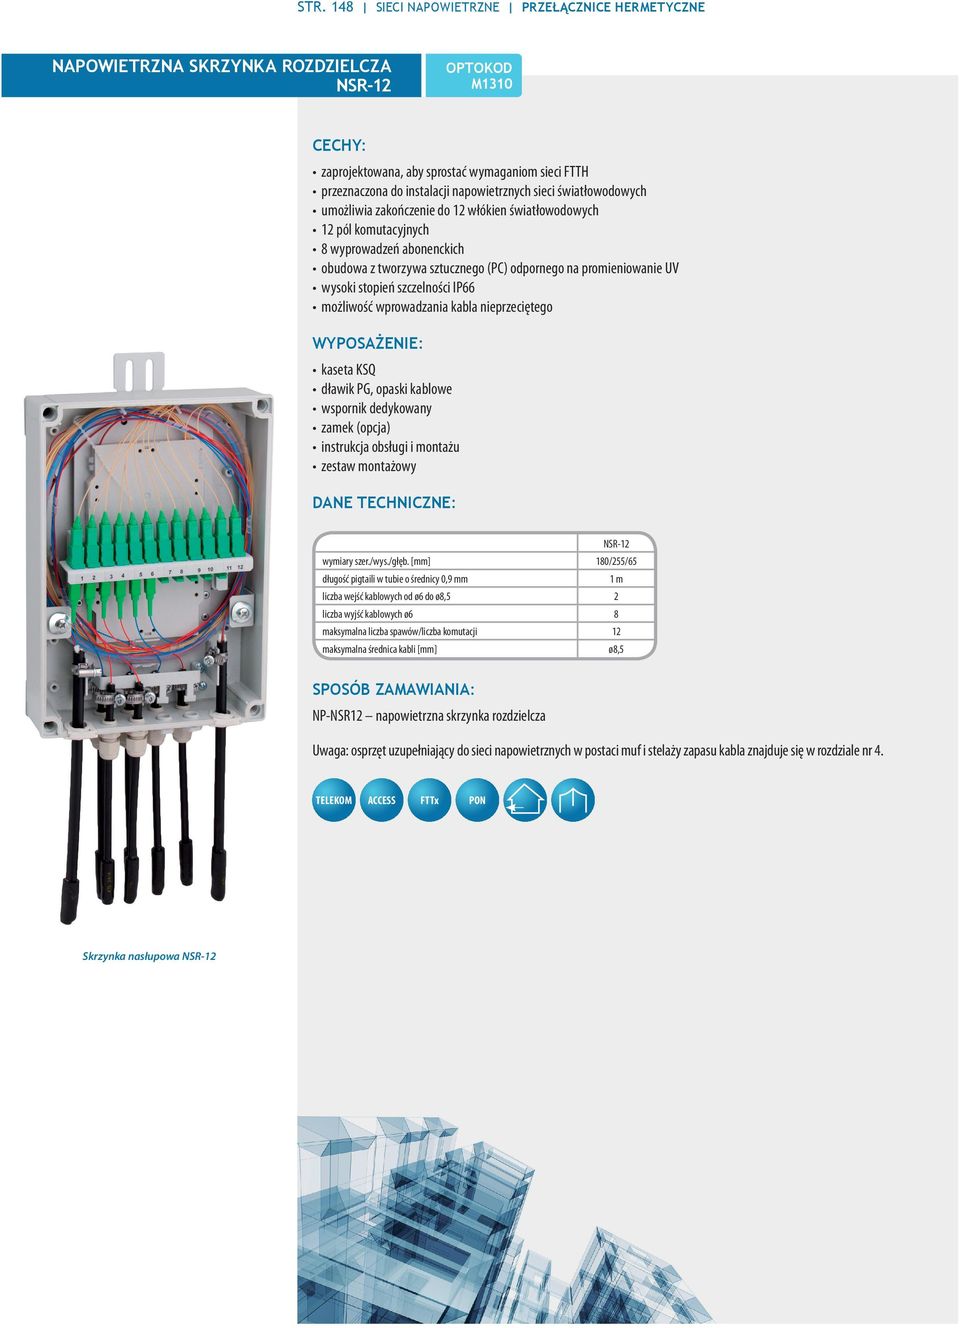 szczelności IP66 możliwość wprowadzania kabla nieprzeciętego WYPOSAŻENIE: kaseta KSQ dławik PG, opaski kablowe wspornik dedykowany zamek (opcja) instrukcja obsługi i montażu zestaw montażowy NSR-12